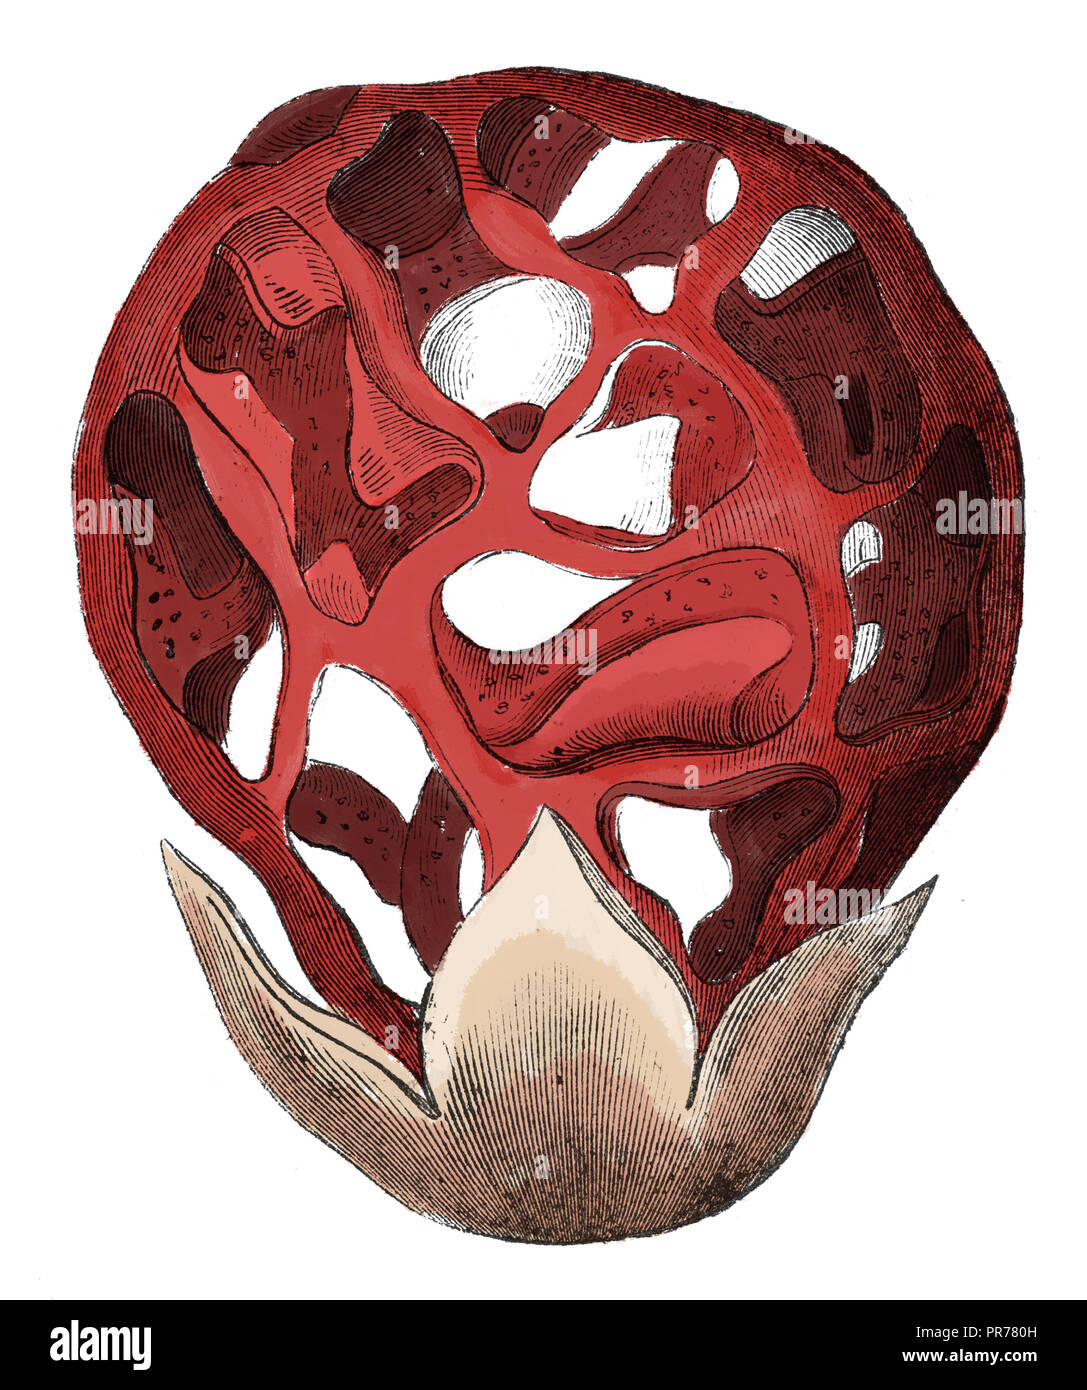 19 Abbildung: Clathrus ruber, bekannt als der vergitterten Exemplar des Gemeinen Stinkmorchels, den Korb Exemplar des Gemeinen Stinkmorchels oder der rote Käfig. In systematischer Bilder veröffentlicht. Stockfoto